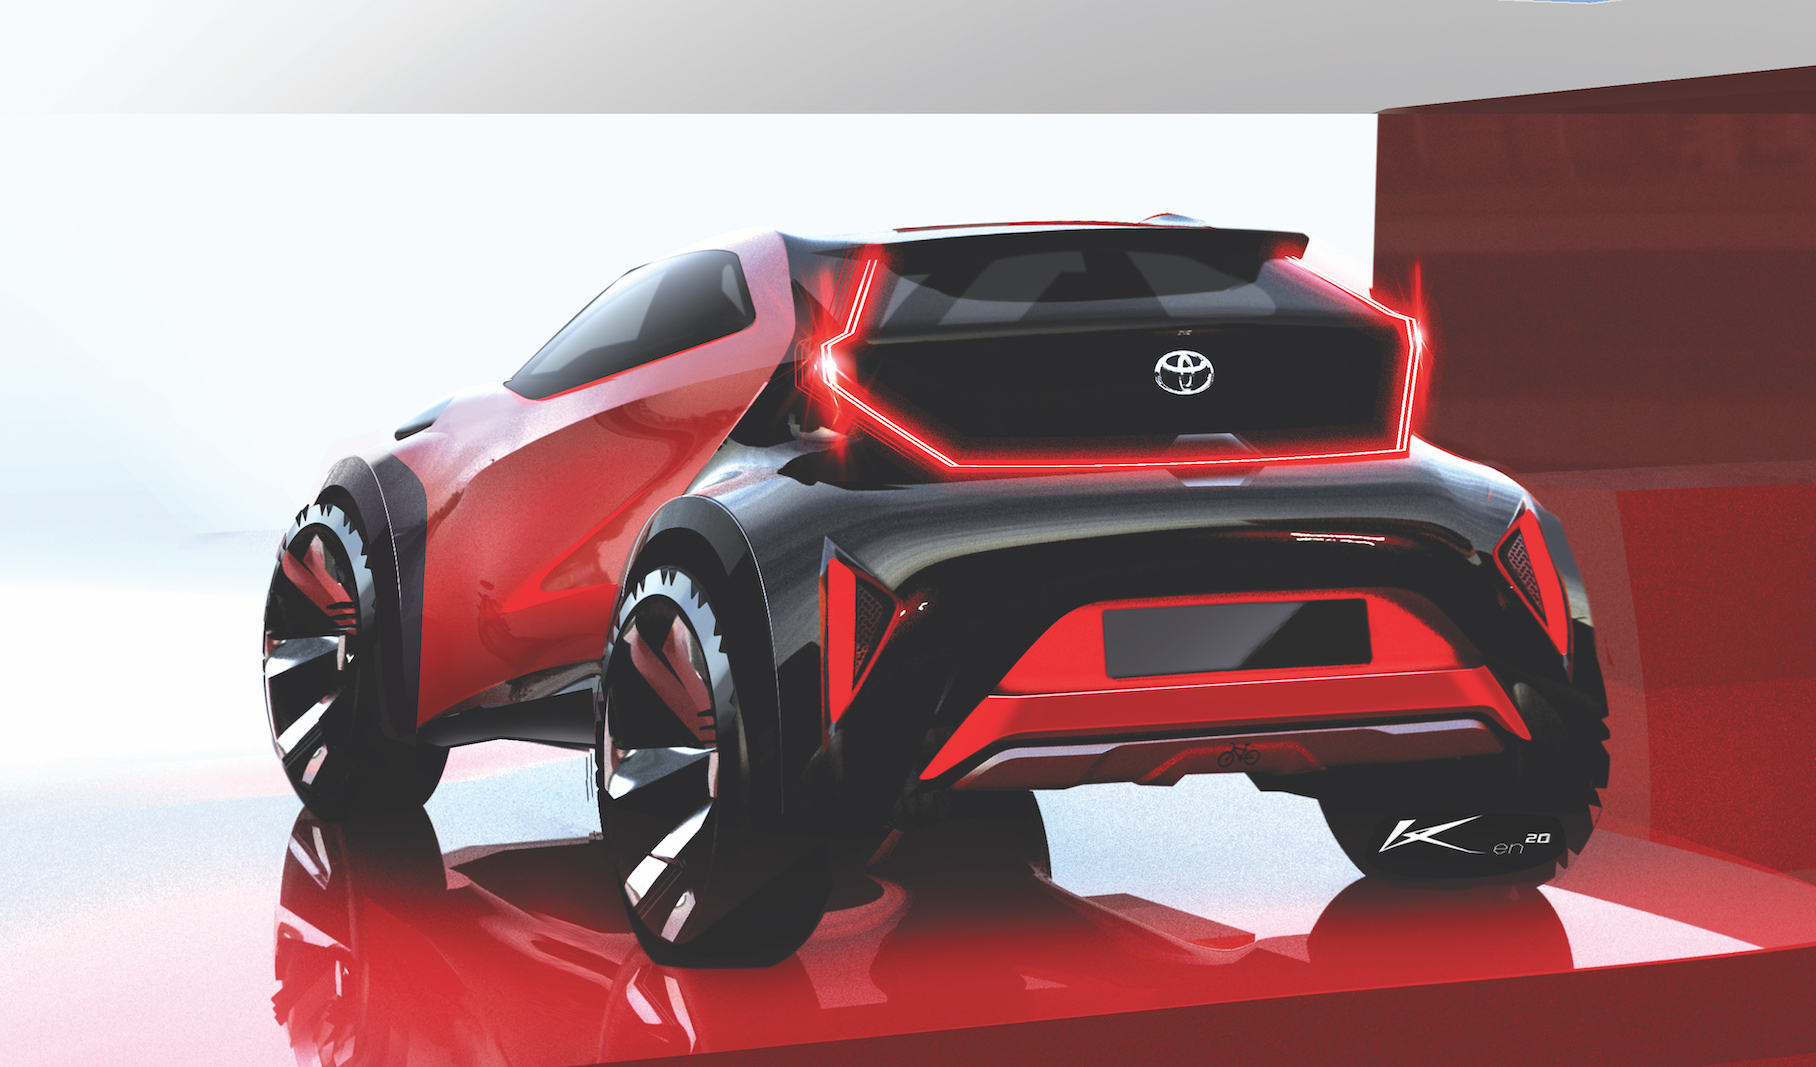 Toyota представила концепт Aygo X prologue